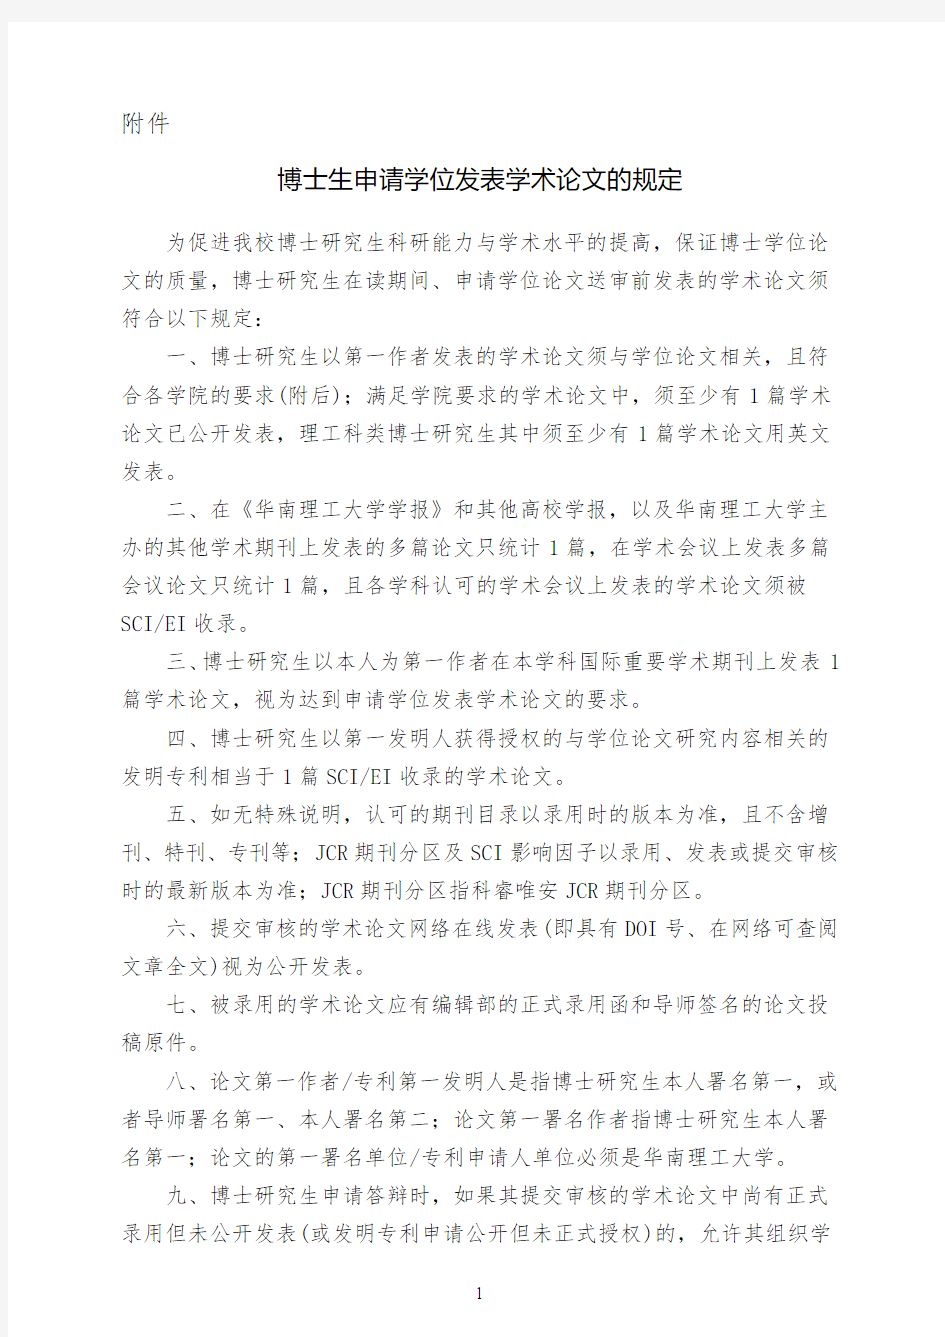 华南理工大学博士生申请学位发表学术论文的规定(2018.9.30更新)